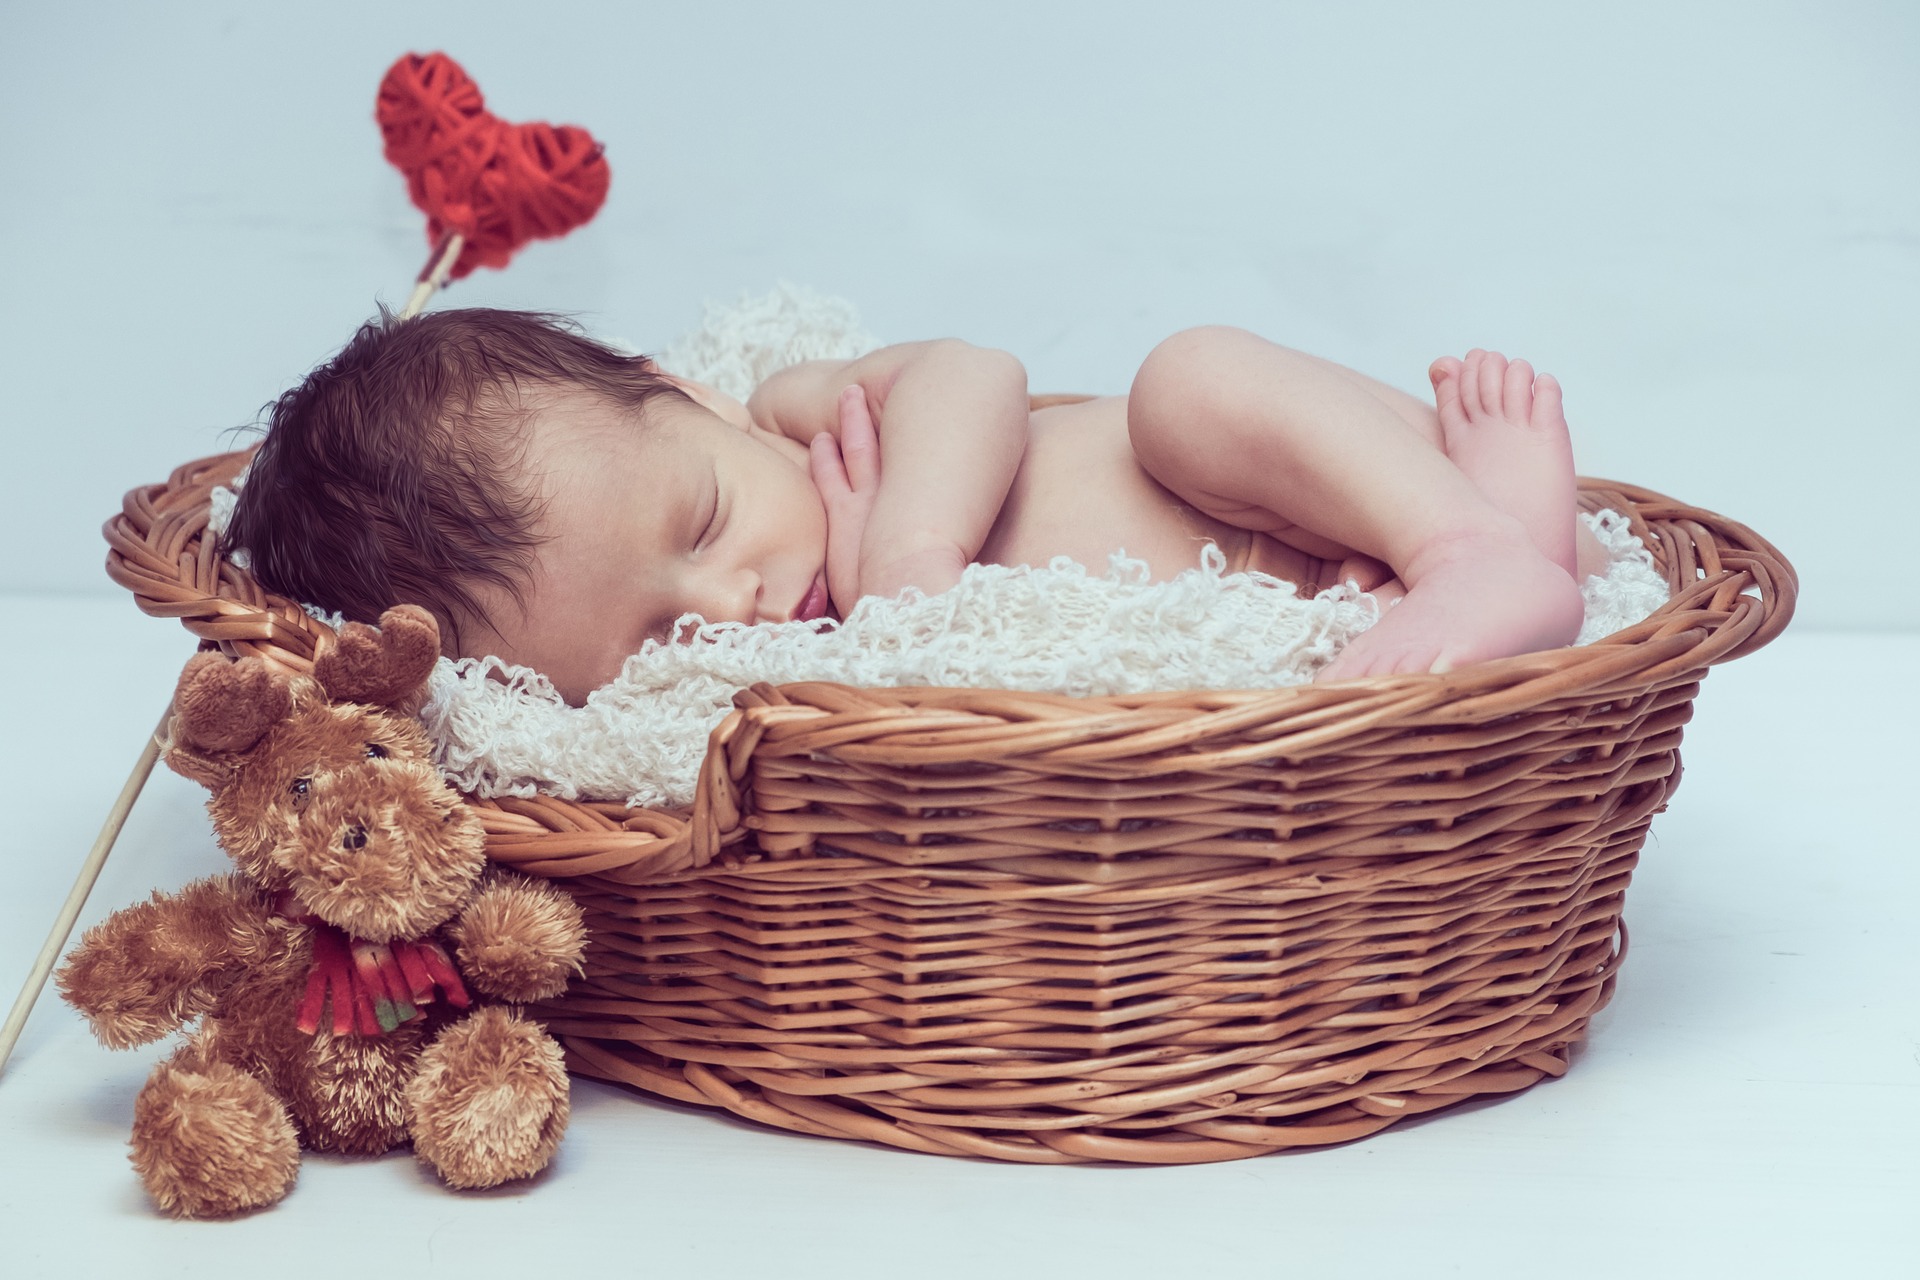 newborn baby asleep with heart flower and teddy bear photogragh